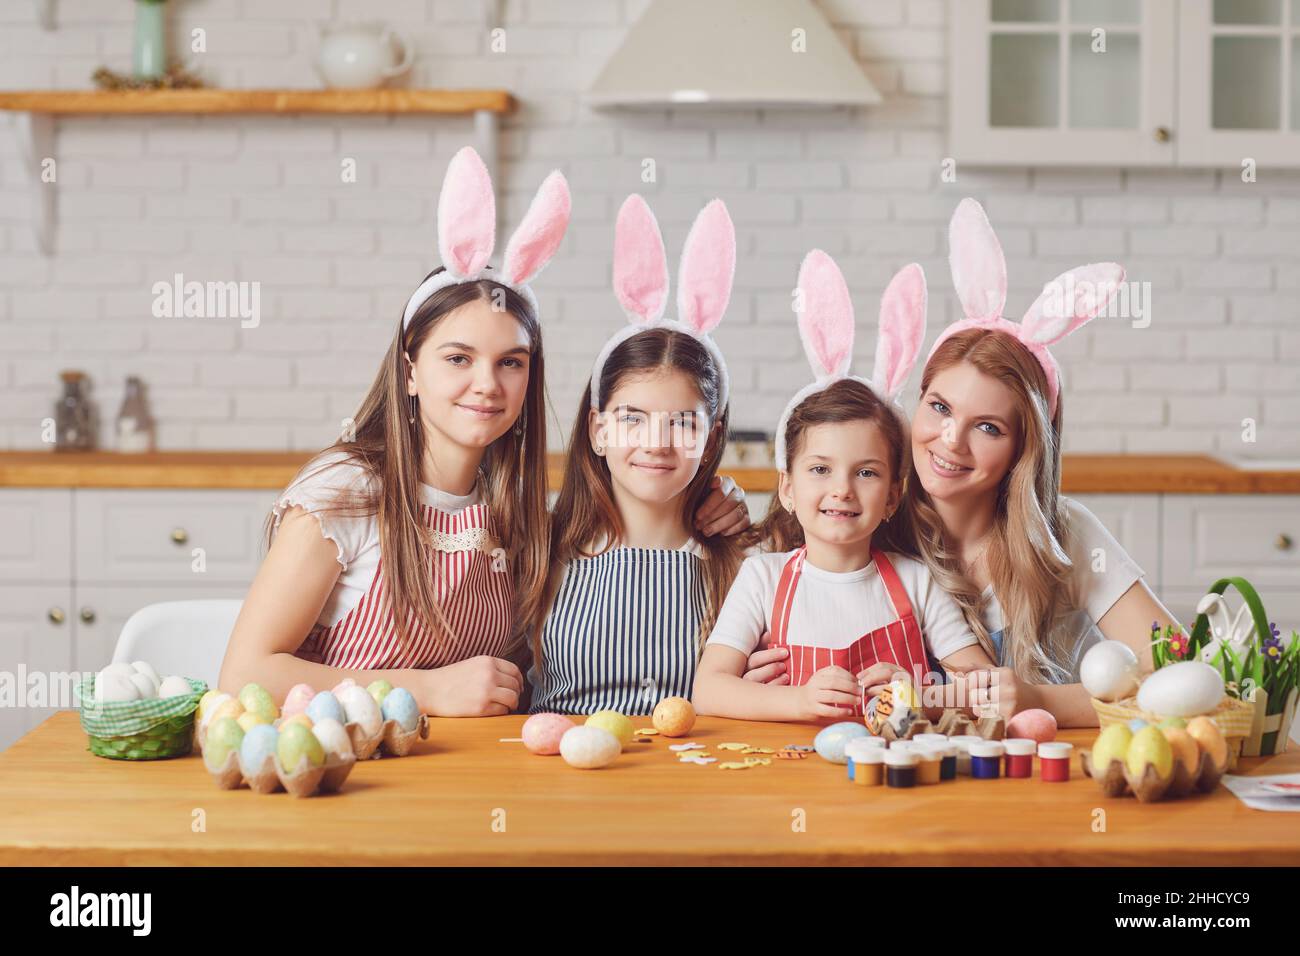 Frohe ostern. Mutter und Töchter mit Kaninchenohren schmücken Ostereier an einem Tisch in der Küche. Stockfoto